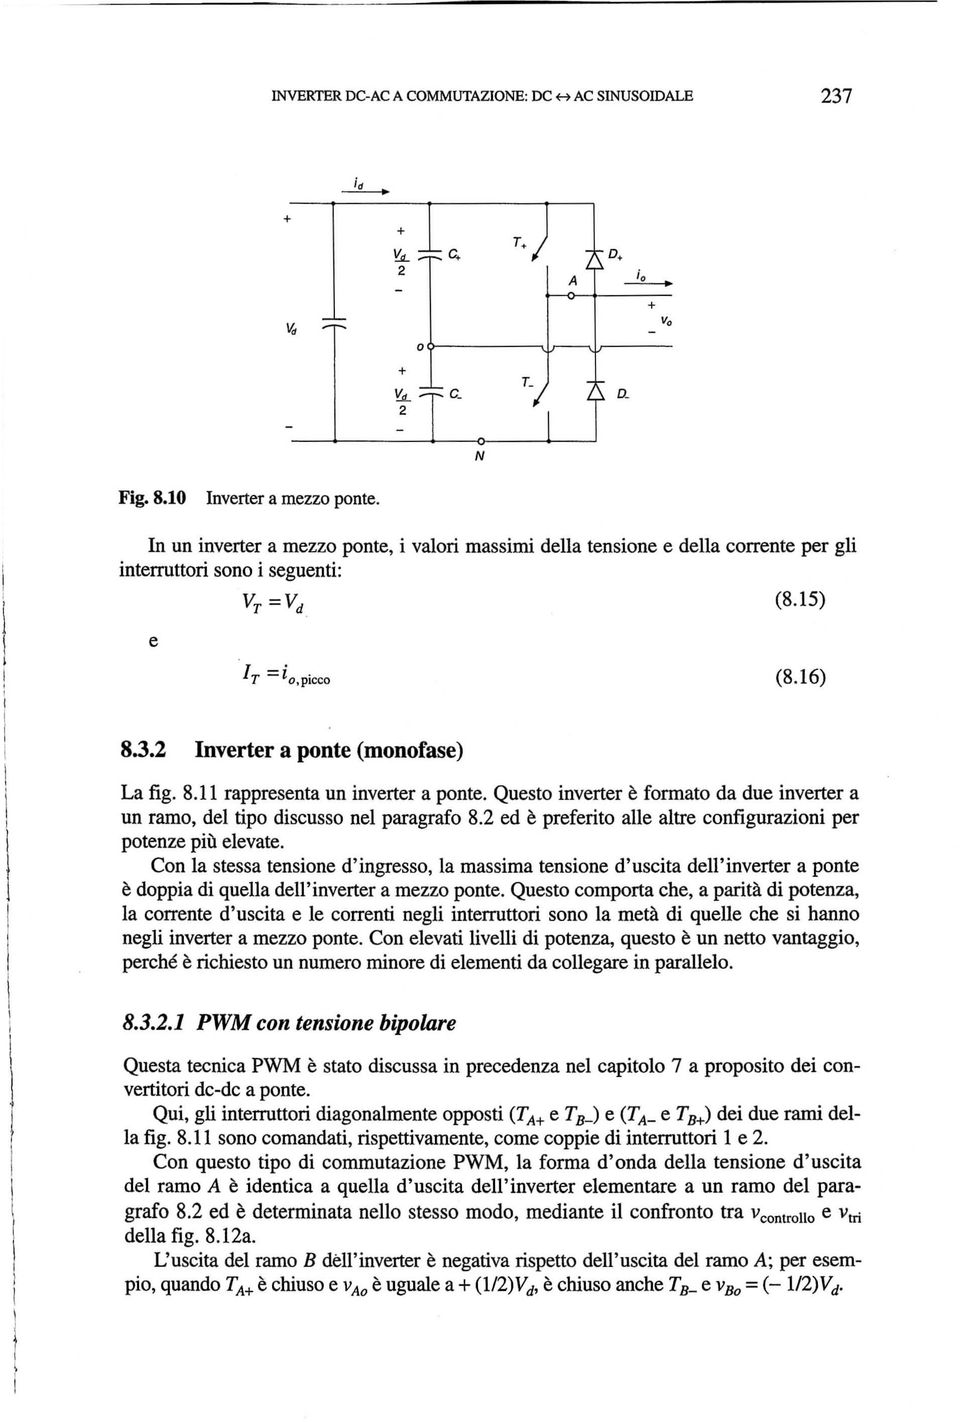 Qusto invrtr formato da du invrtr a un ramo, dl tipo discusso nl paragrafo 8.2 d prfrito all altr configurazioni pr potnz piil lvat.